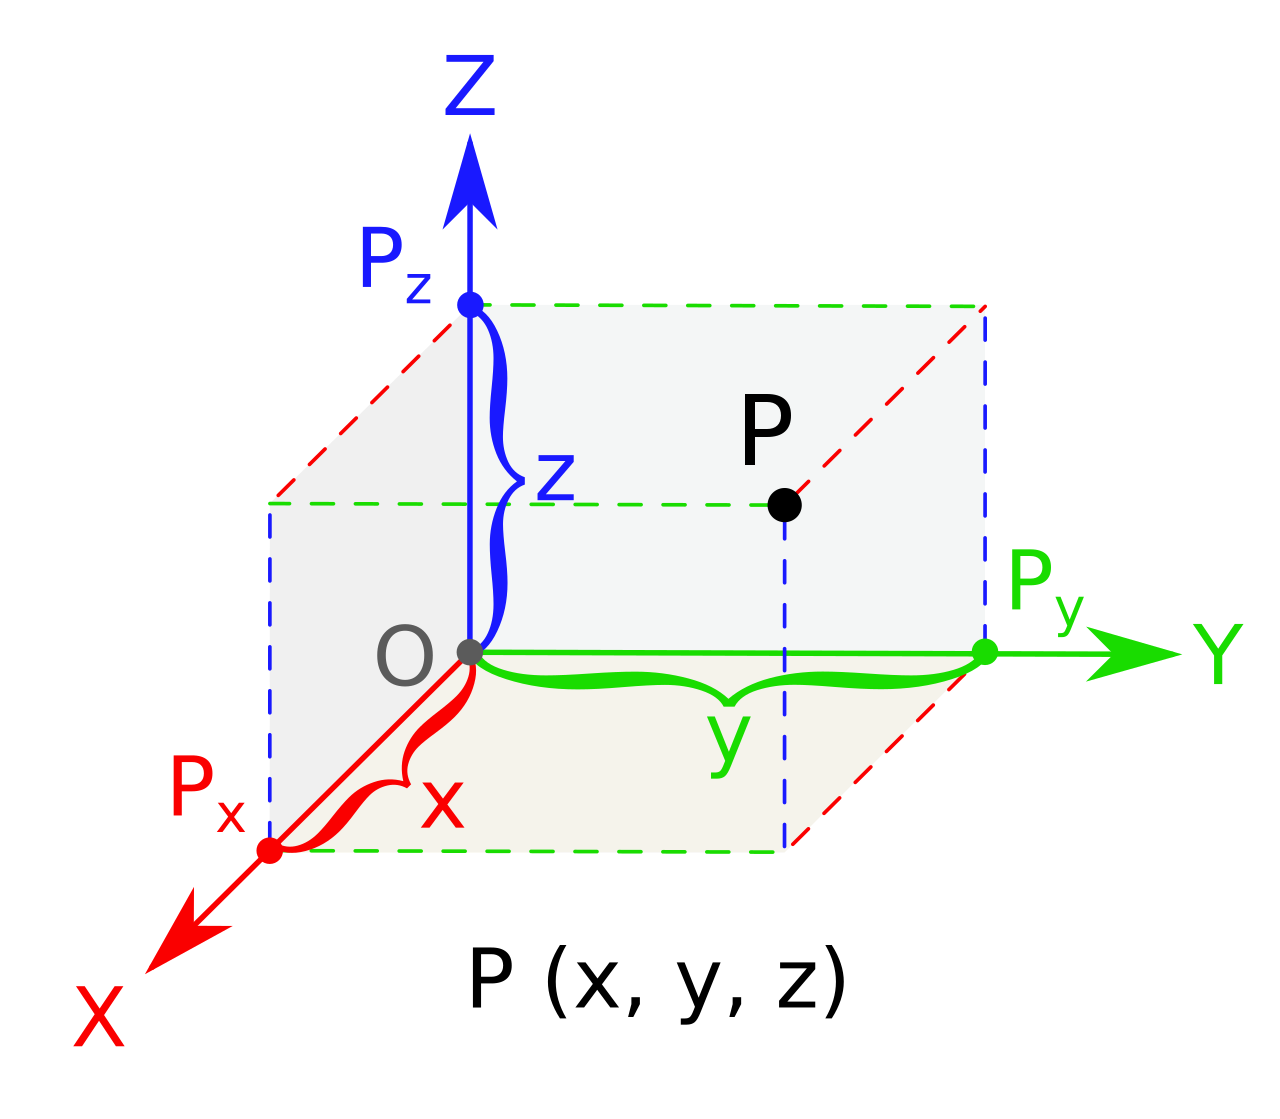 Положение точки Р в пространстве и ее координаты в декартовой системе координат (рисунок из Википедии)